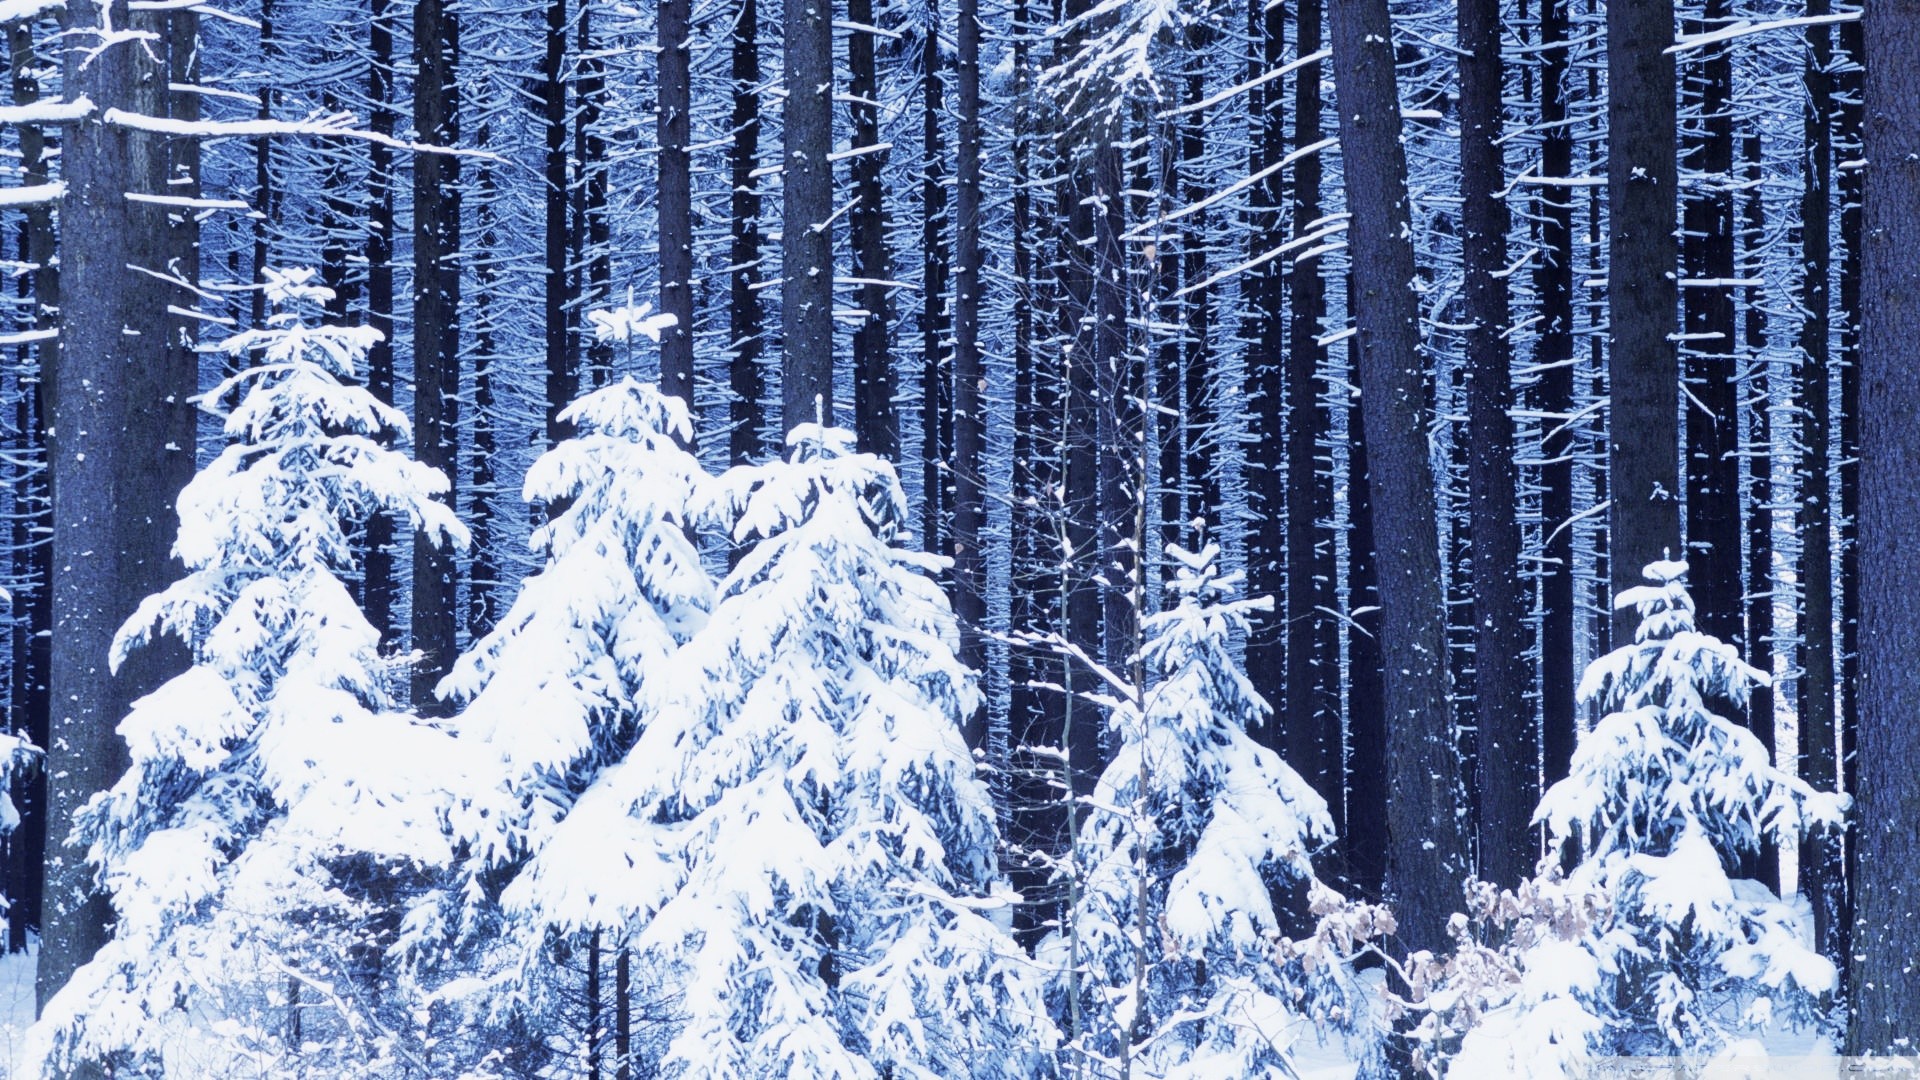 Snowy forest hd desktop wallpaper widescreen high definition